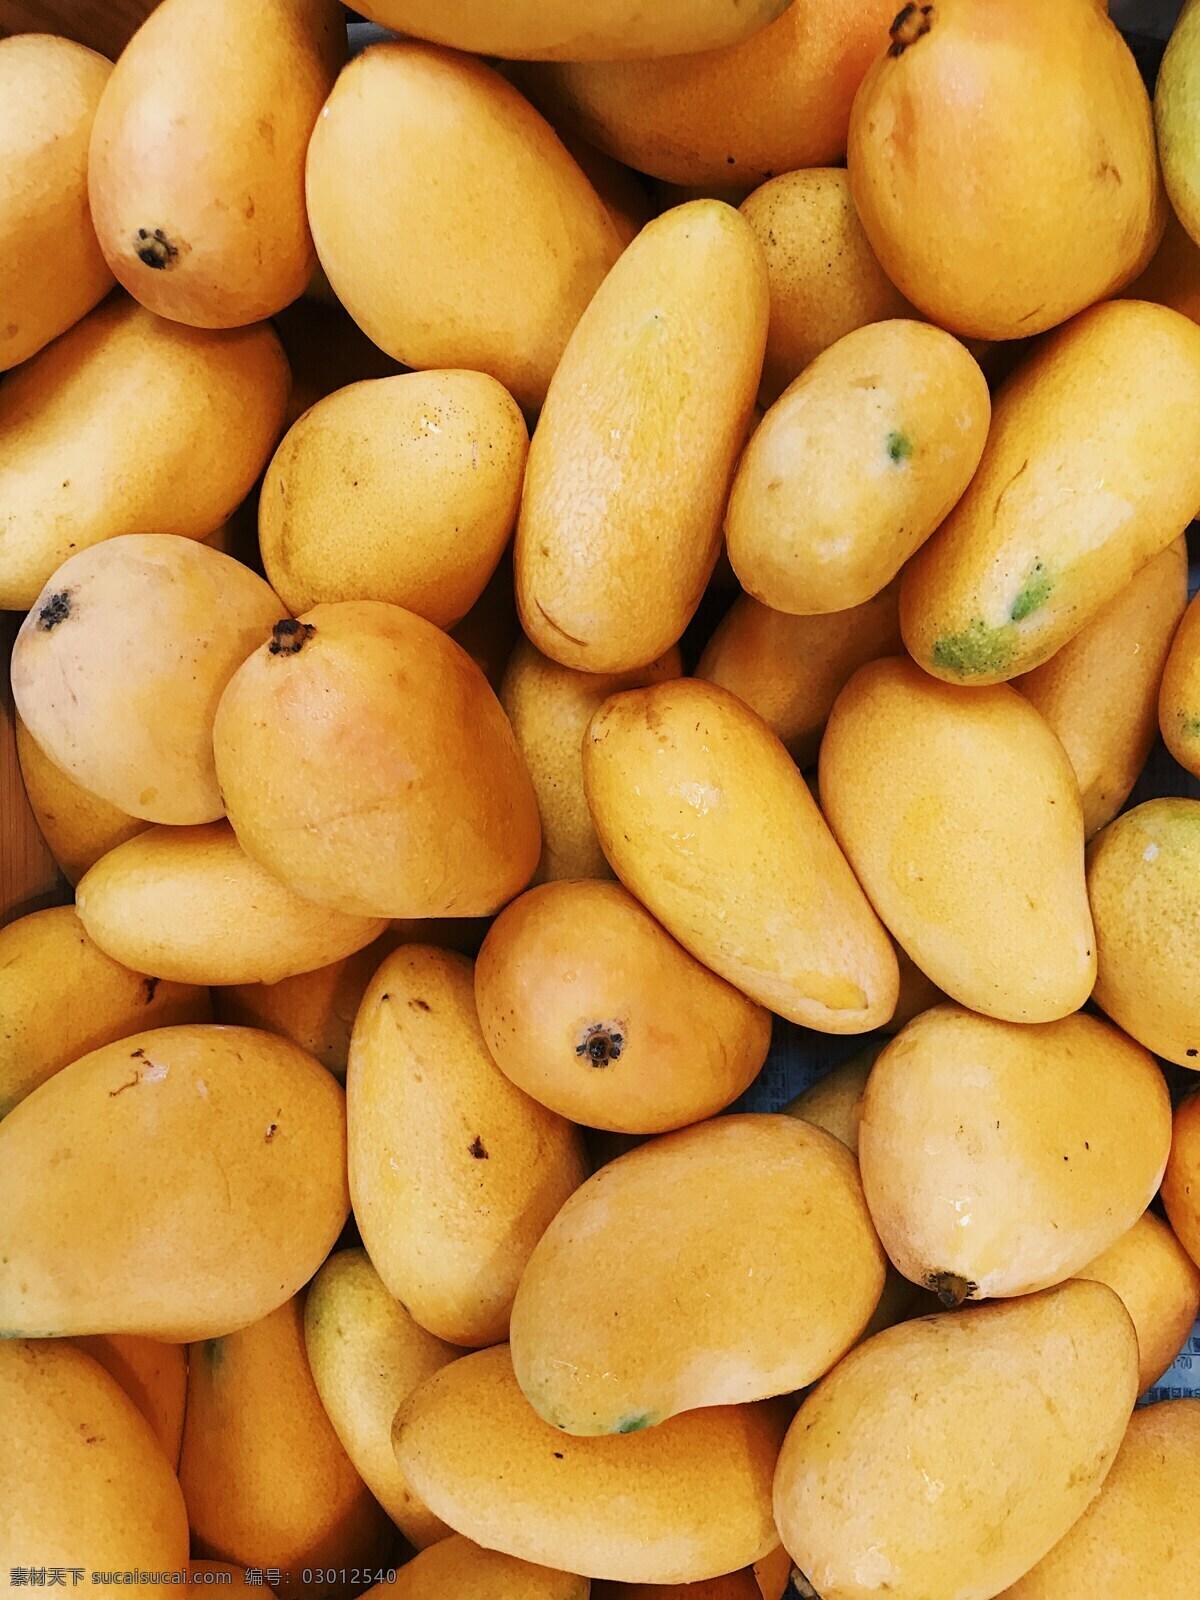 一堆芒果 图案 壁纸 手机屏保 新鲜水果 水果 满屏芒果 背景 芒果特写 芒果背景 泰芒 黄色芒果 小芒果 餐饮美食 食物原料